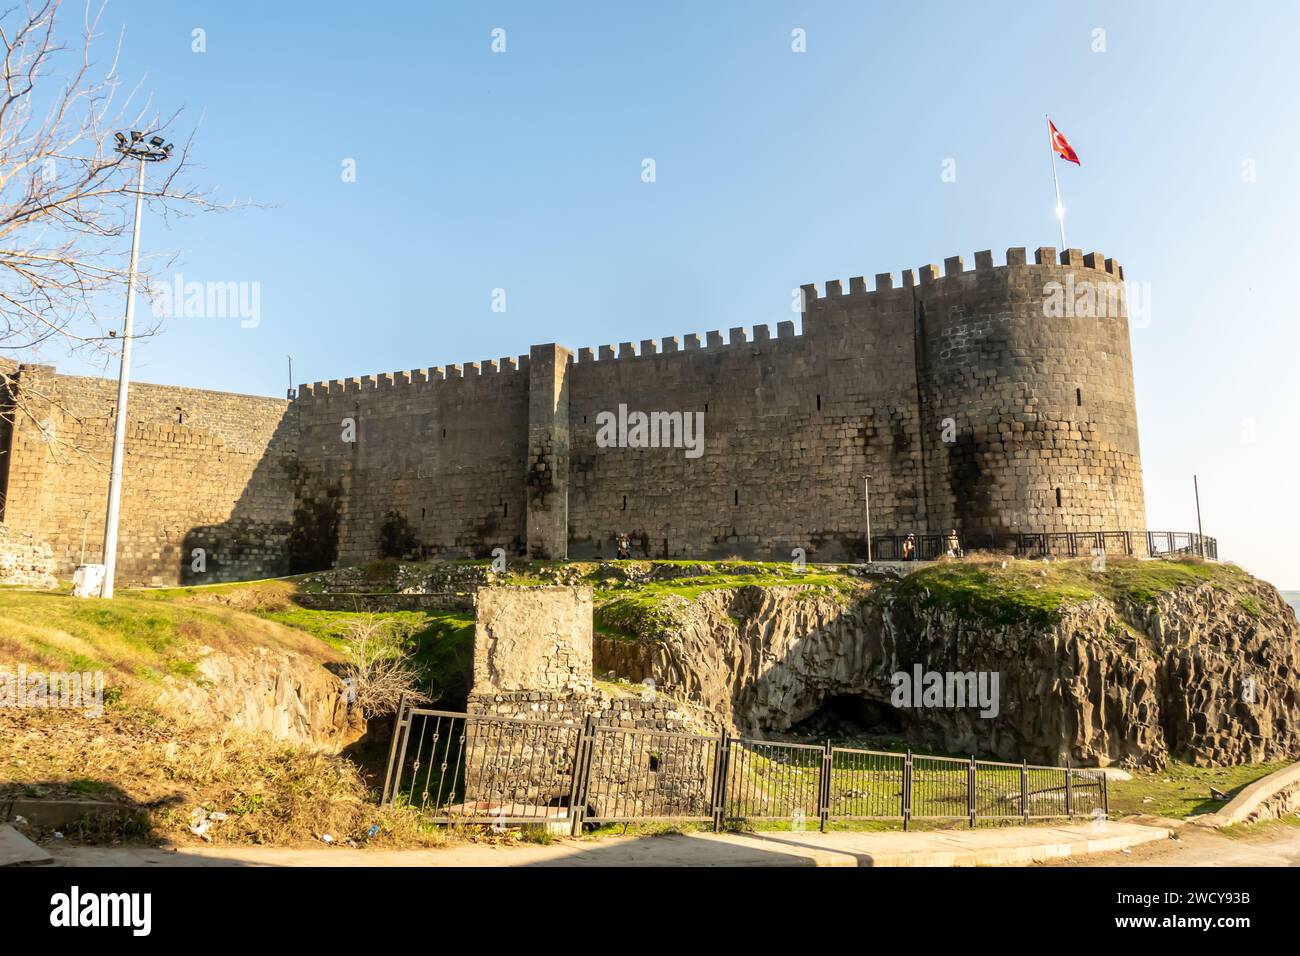 Keçi Burcu la Tour de chèvre, une section de la muraille de la ville à Diyarbakir Turquie Banque D'Images